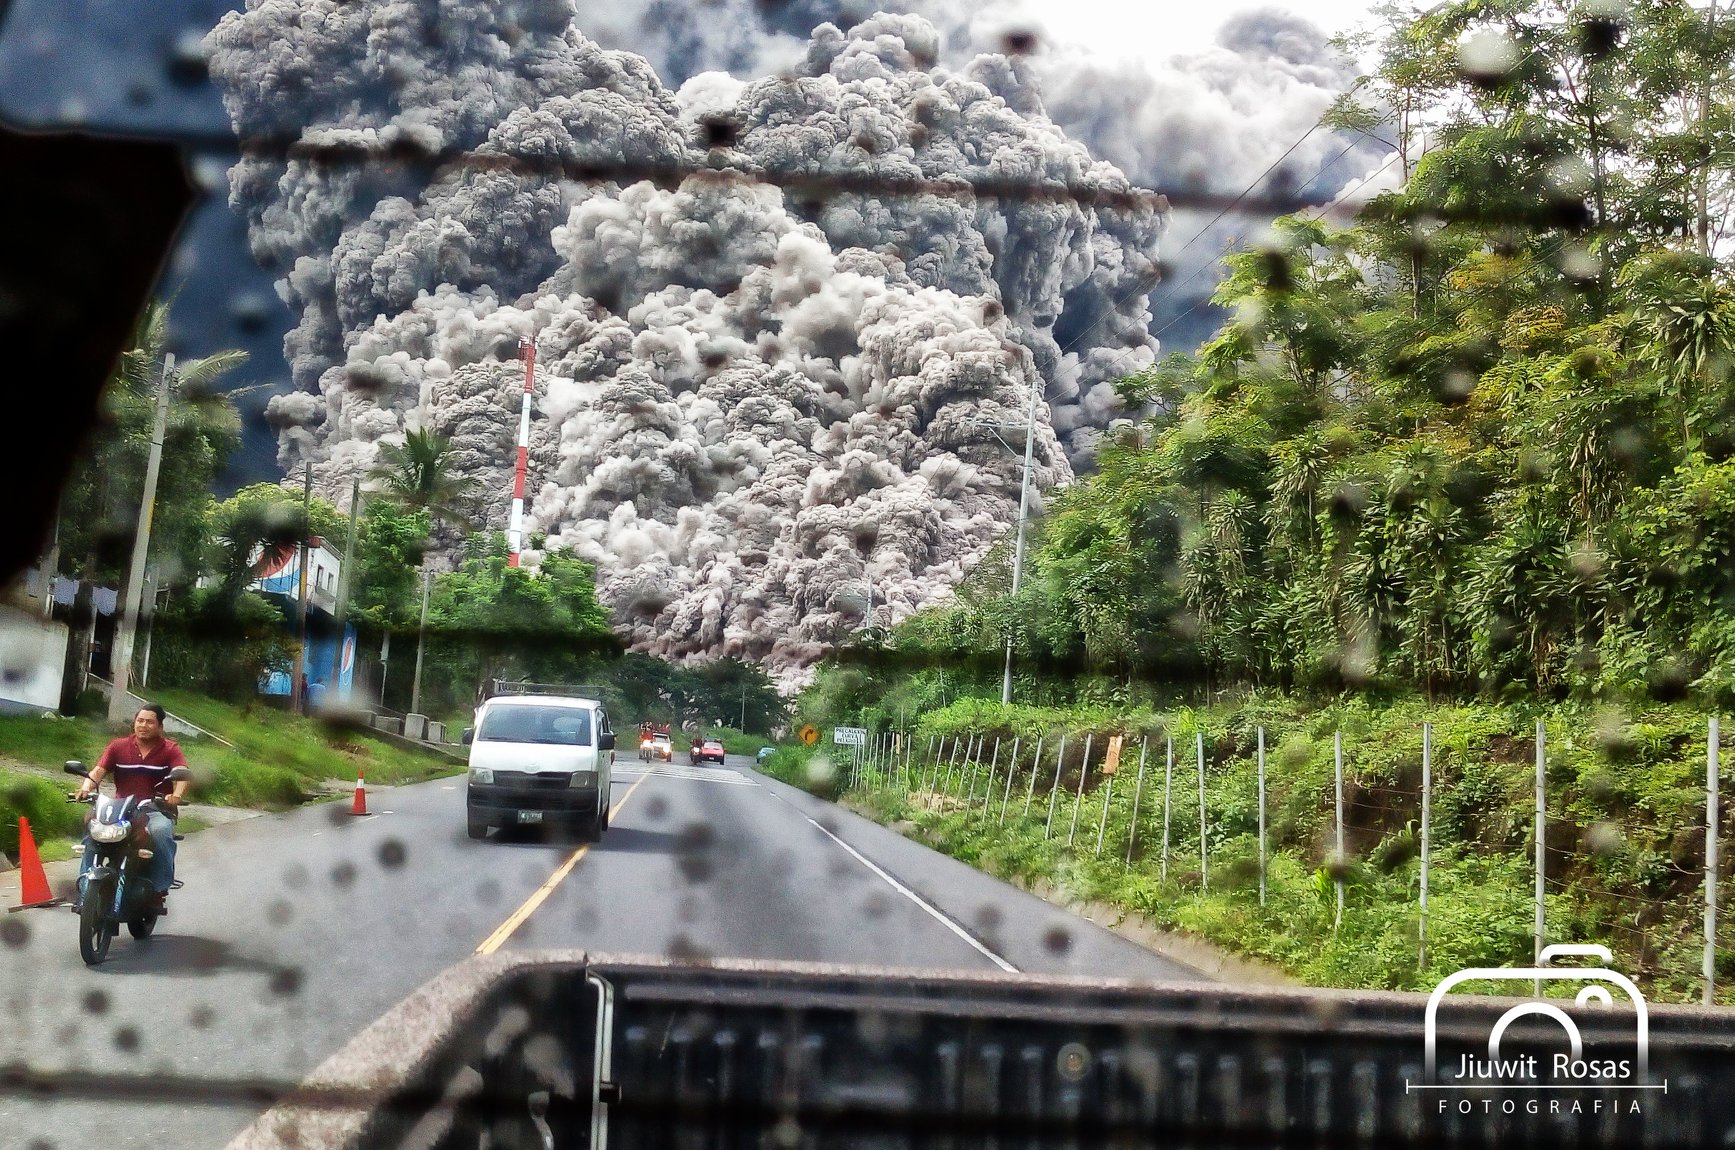 En el episodio, Volcanes, el documental de Netflix, Planeta Furioso, recuerda el caso de la mortal erupción del volcán de Fuego en 2018. Foto cortesía Jiuwit Rosas.